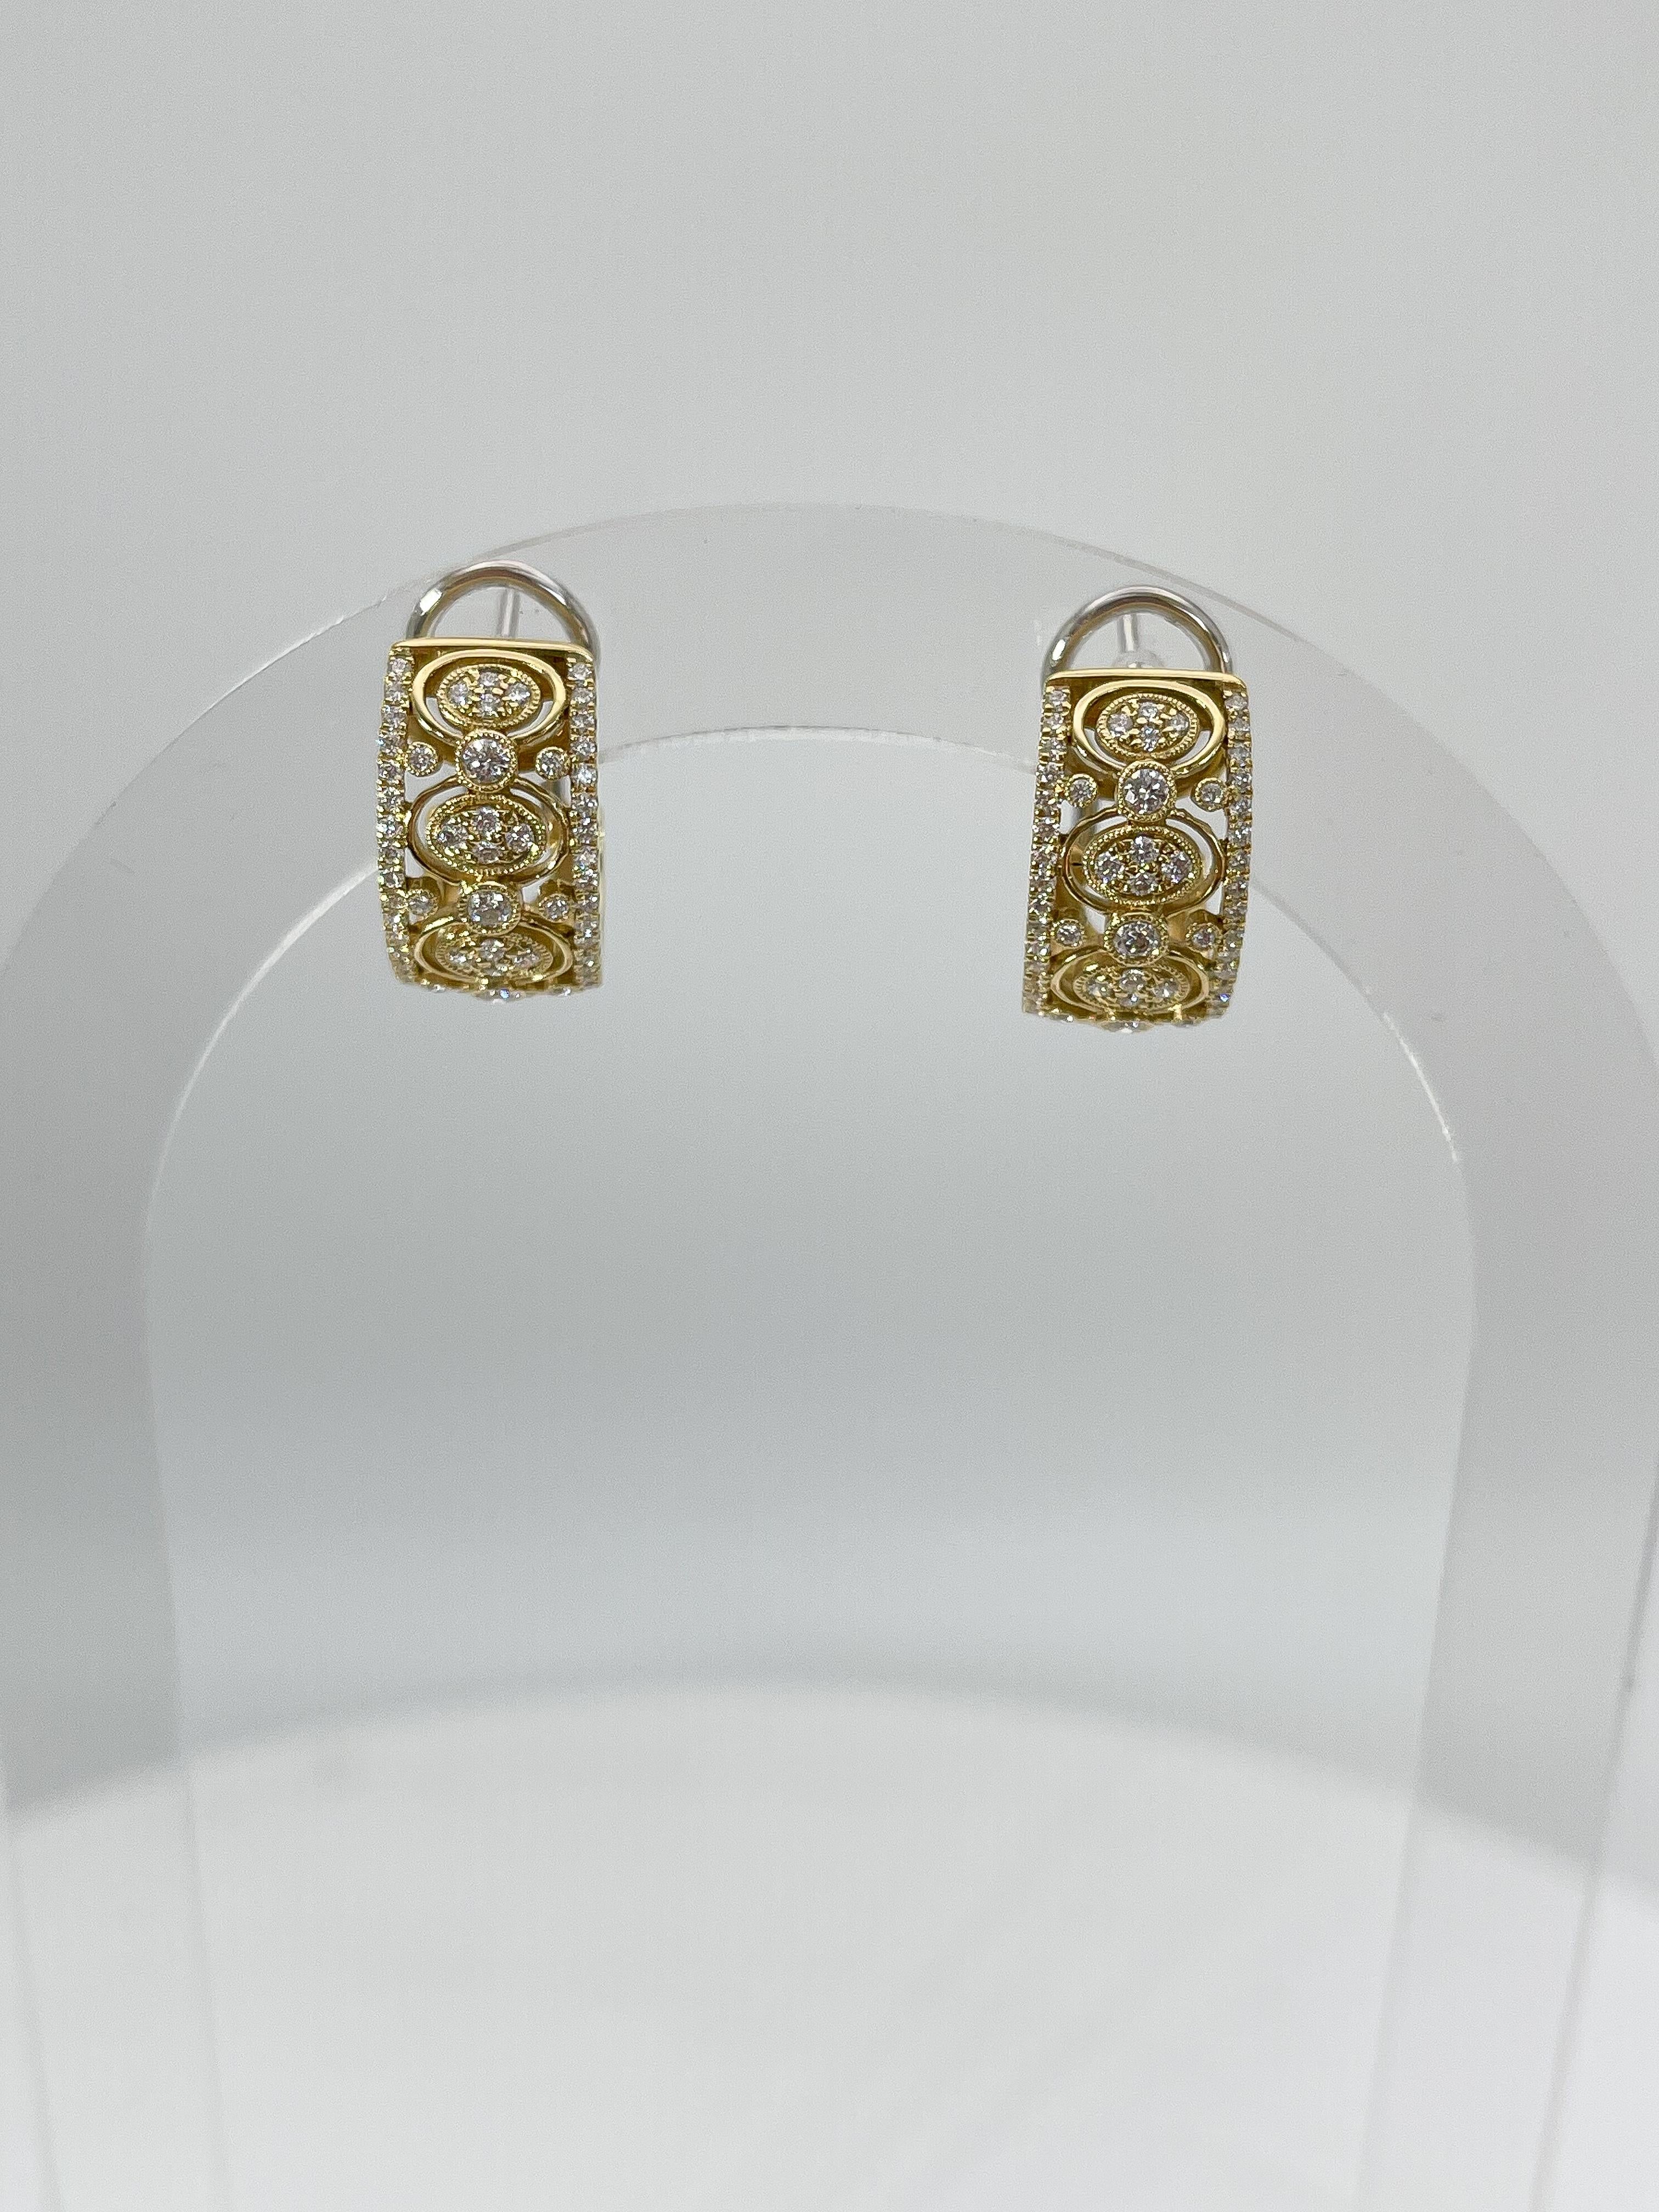 Simon G 18k Gelbgold .70 CTW Diamant Mode Ohrringe. Die Diamanten in diesen Ohrringen sind rund, die Maße sind 16,7 x 8,8 mm, sie haben eine Hebelrückseite zum Öffnen und Schließen und sie haben ein Gesamtgewicht von 8 Gramm.
Teilenummer- LE2131